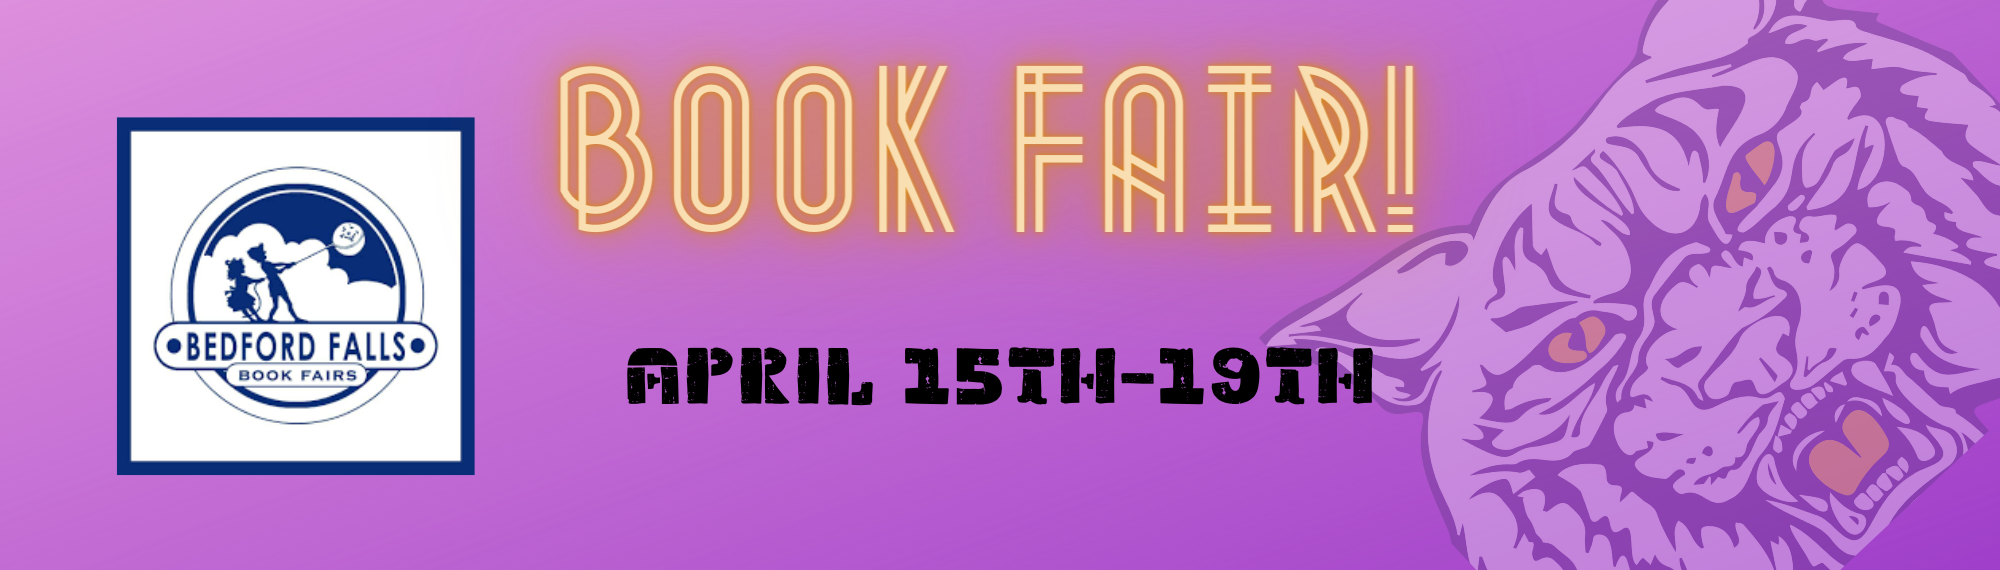 Bedford Falls Book Fair